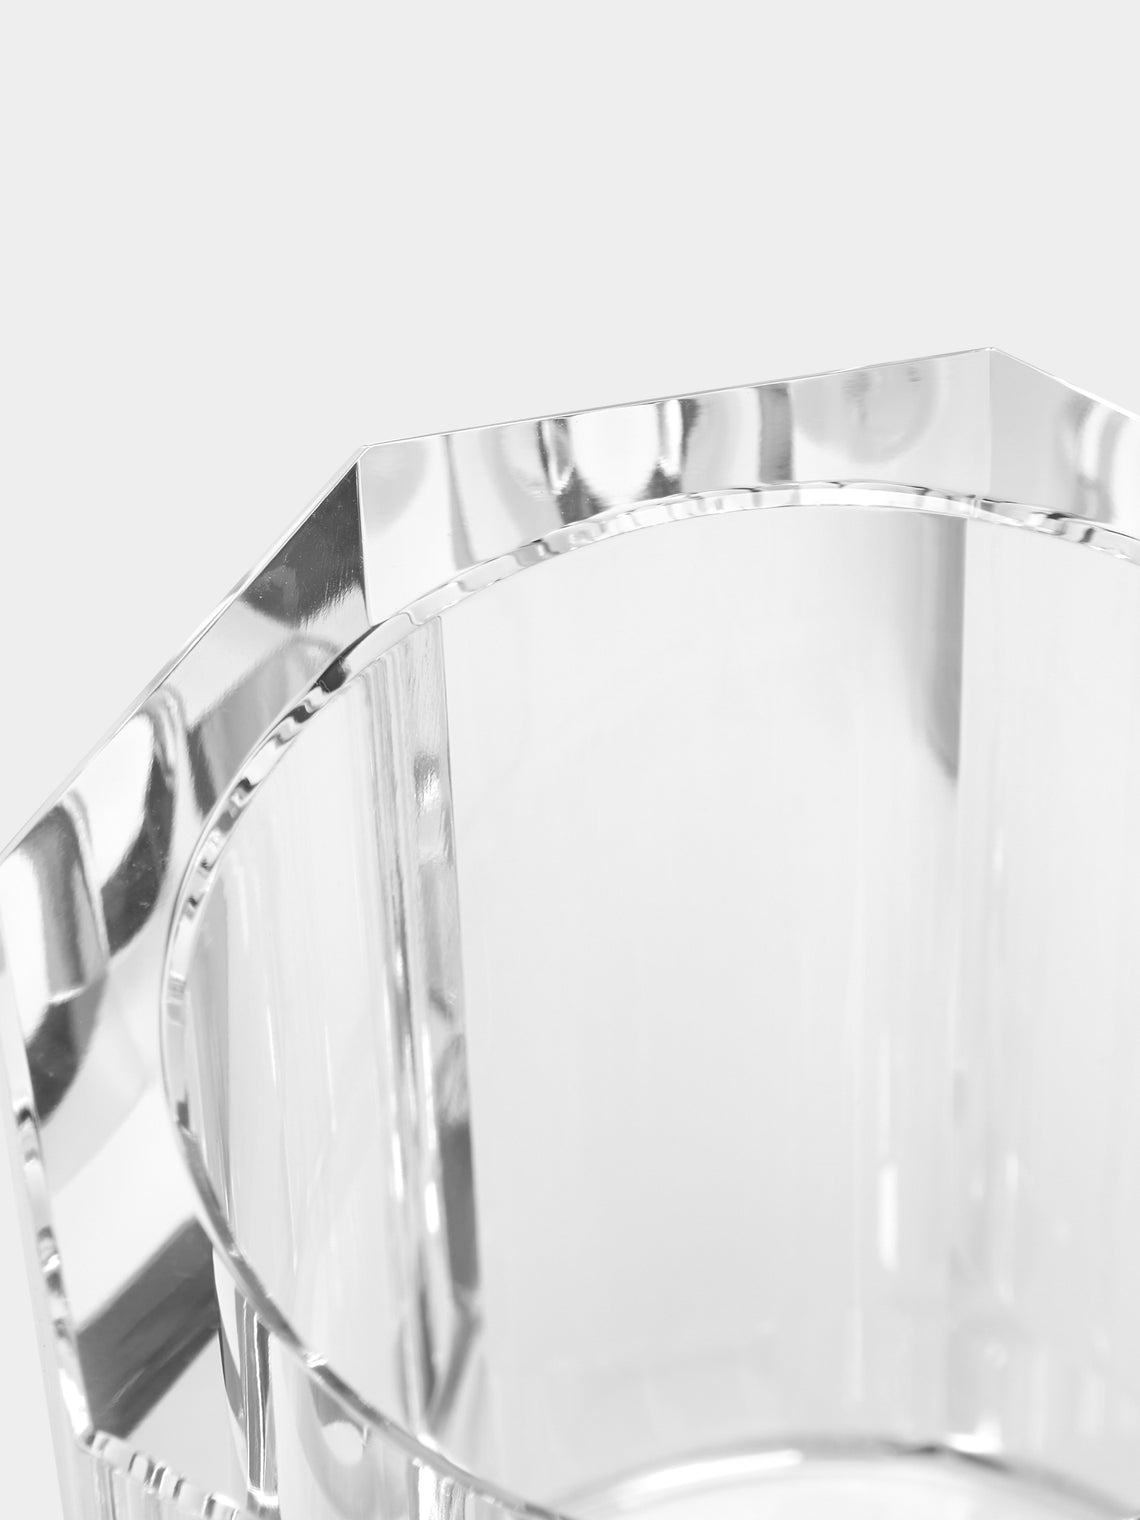 Décor Walther - Cut Crystal Lidded Jar -  - ABASK